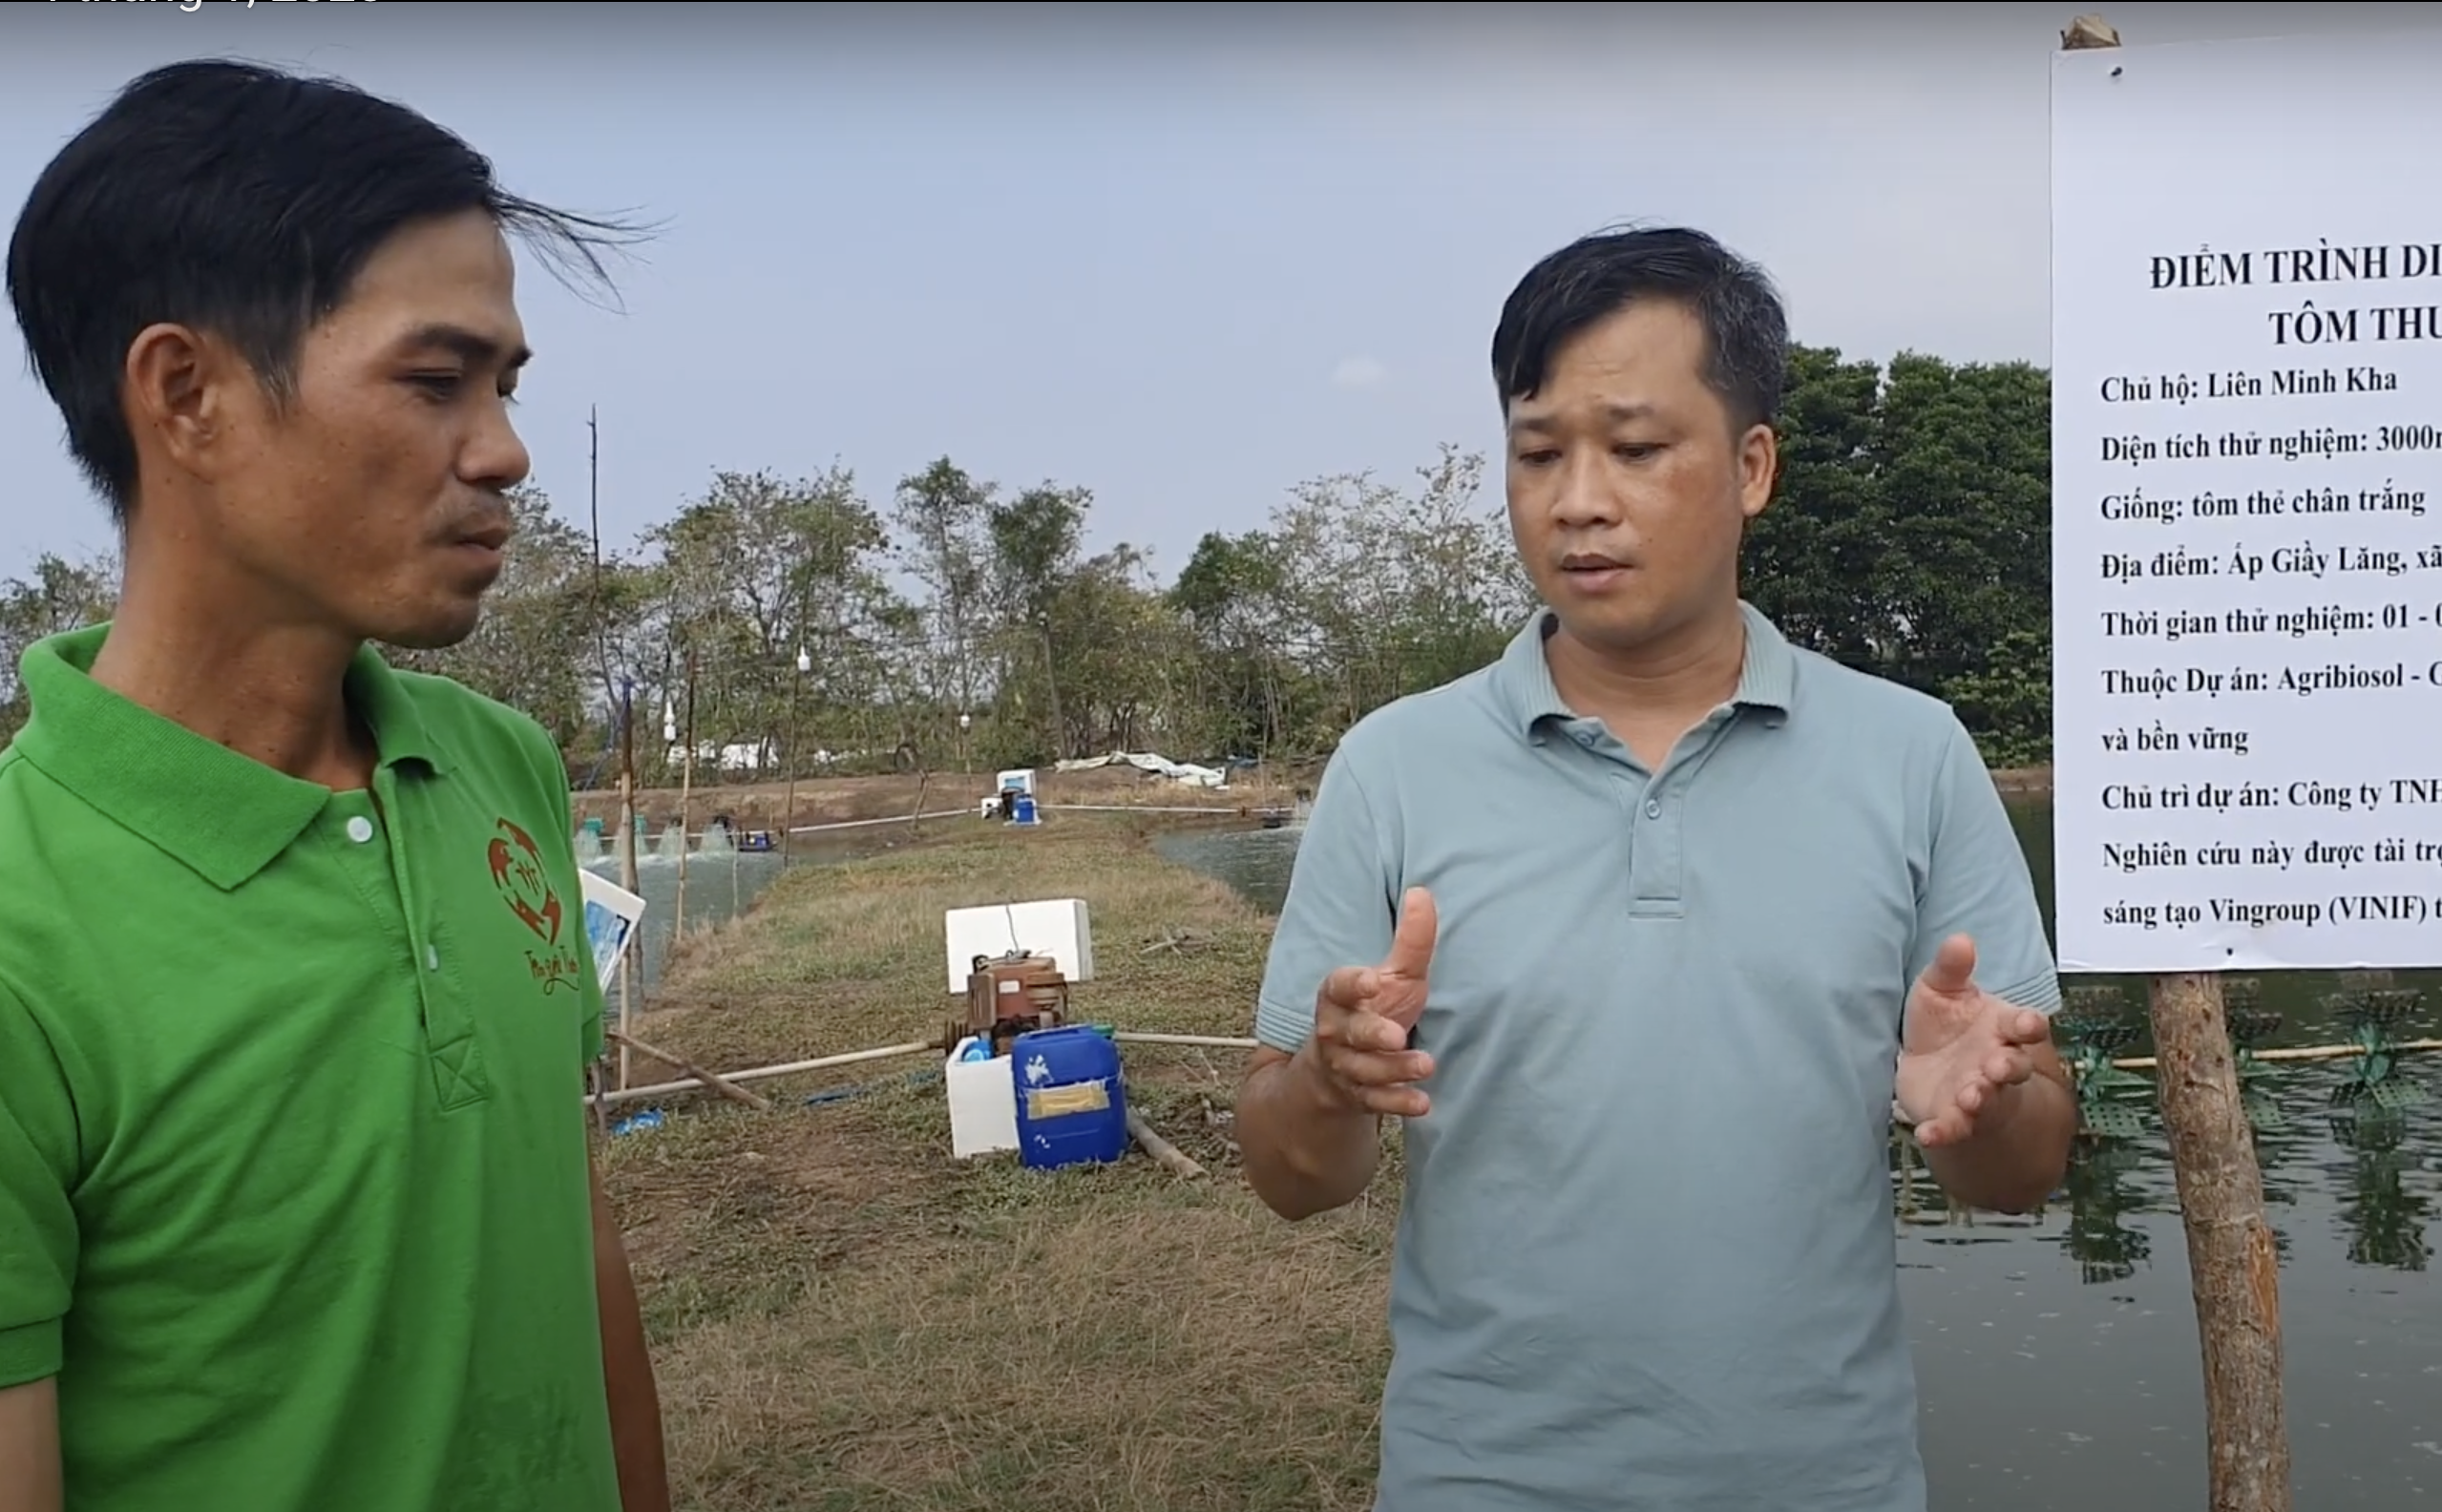 ThS. Nguyễn Văn Minh (bên phải) trao đổi với anh Liên Minh Kha, một chủ hộ nuôi tôm ở Sóc Trăng, về bộ sản phẩm vi sinh do MIDOLI cung cấp.